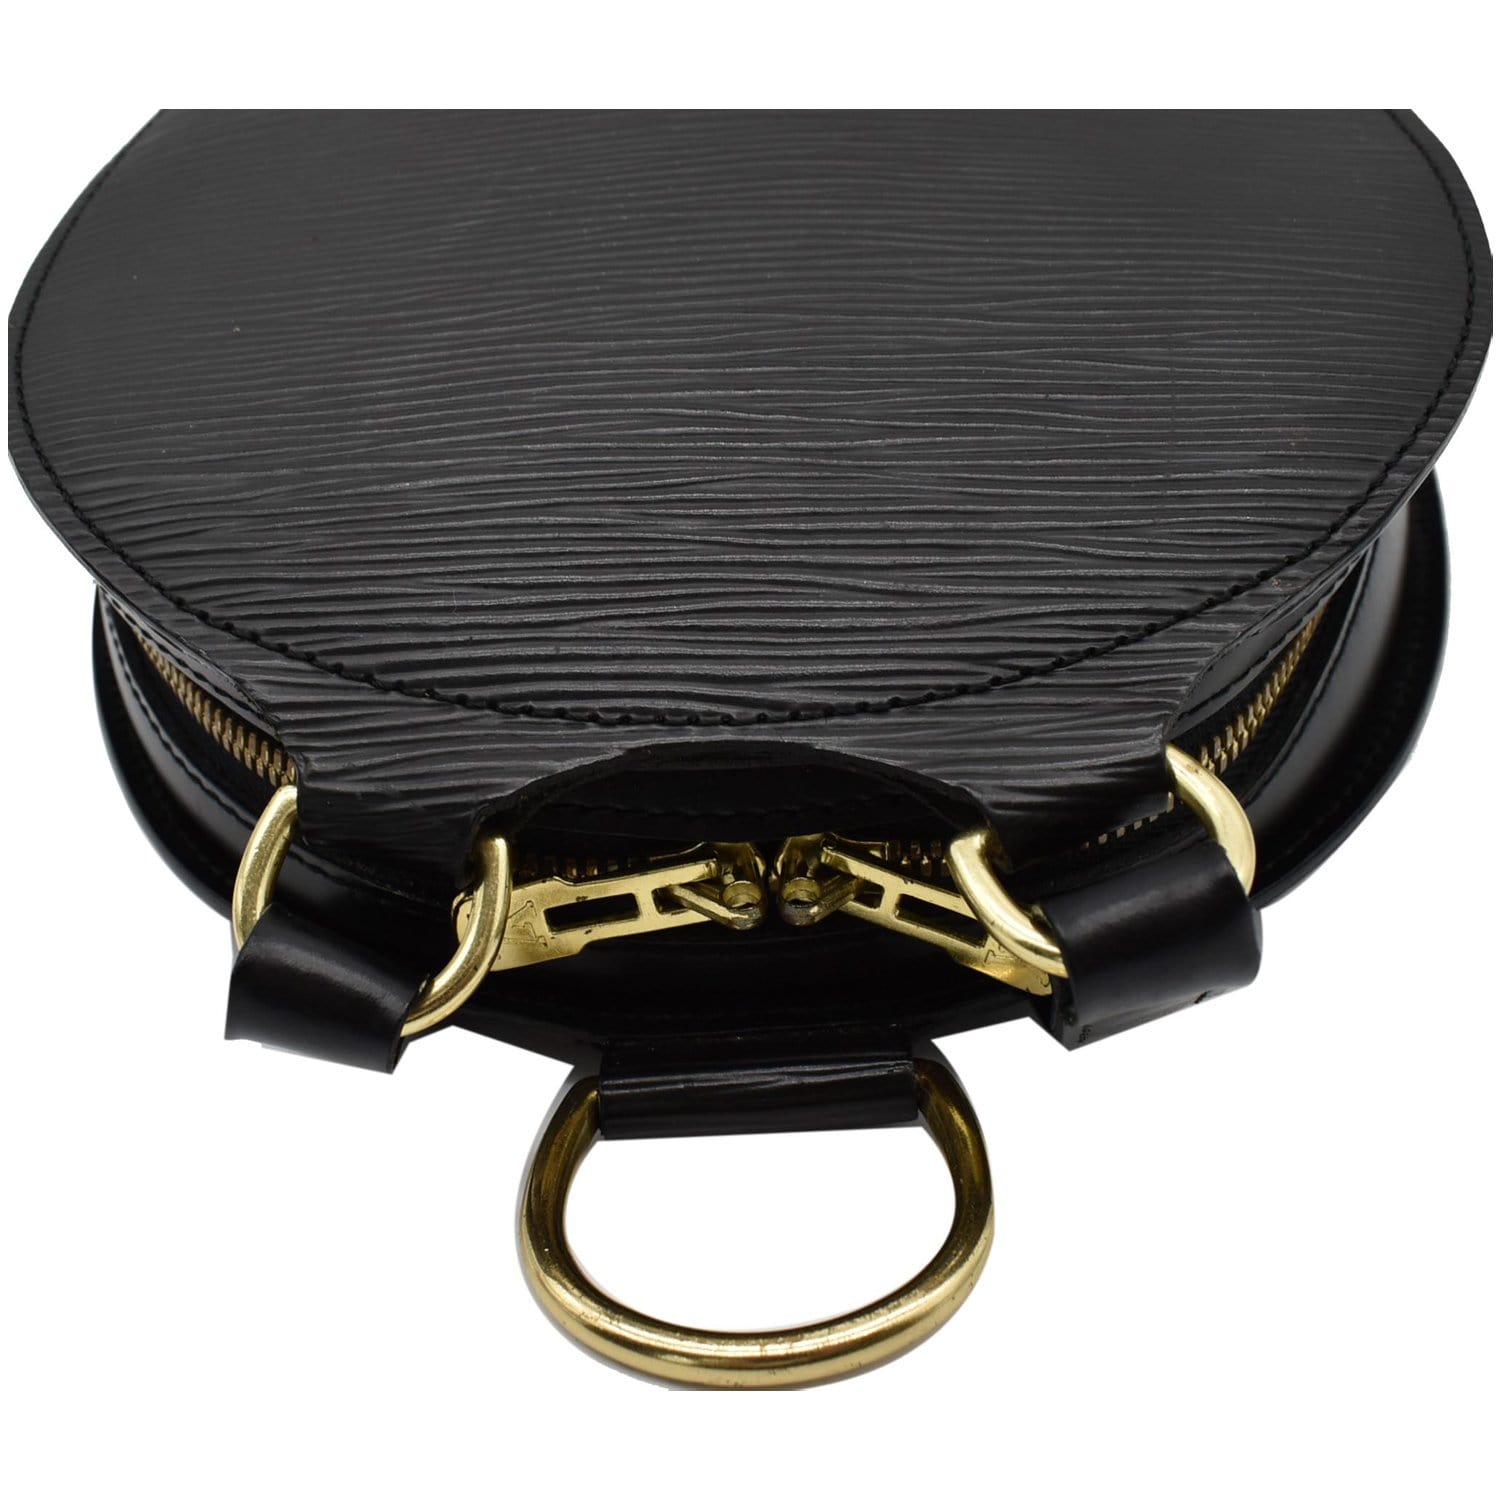 Louis Vuitton Epi Leather Mabillon Backpack - Black Backpacks, Handbags -  LOU10074